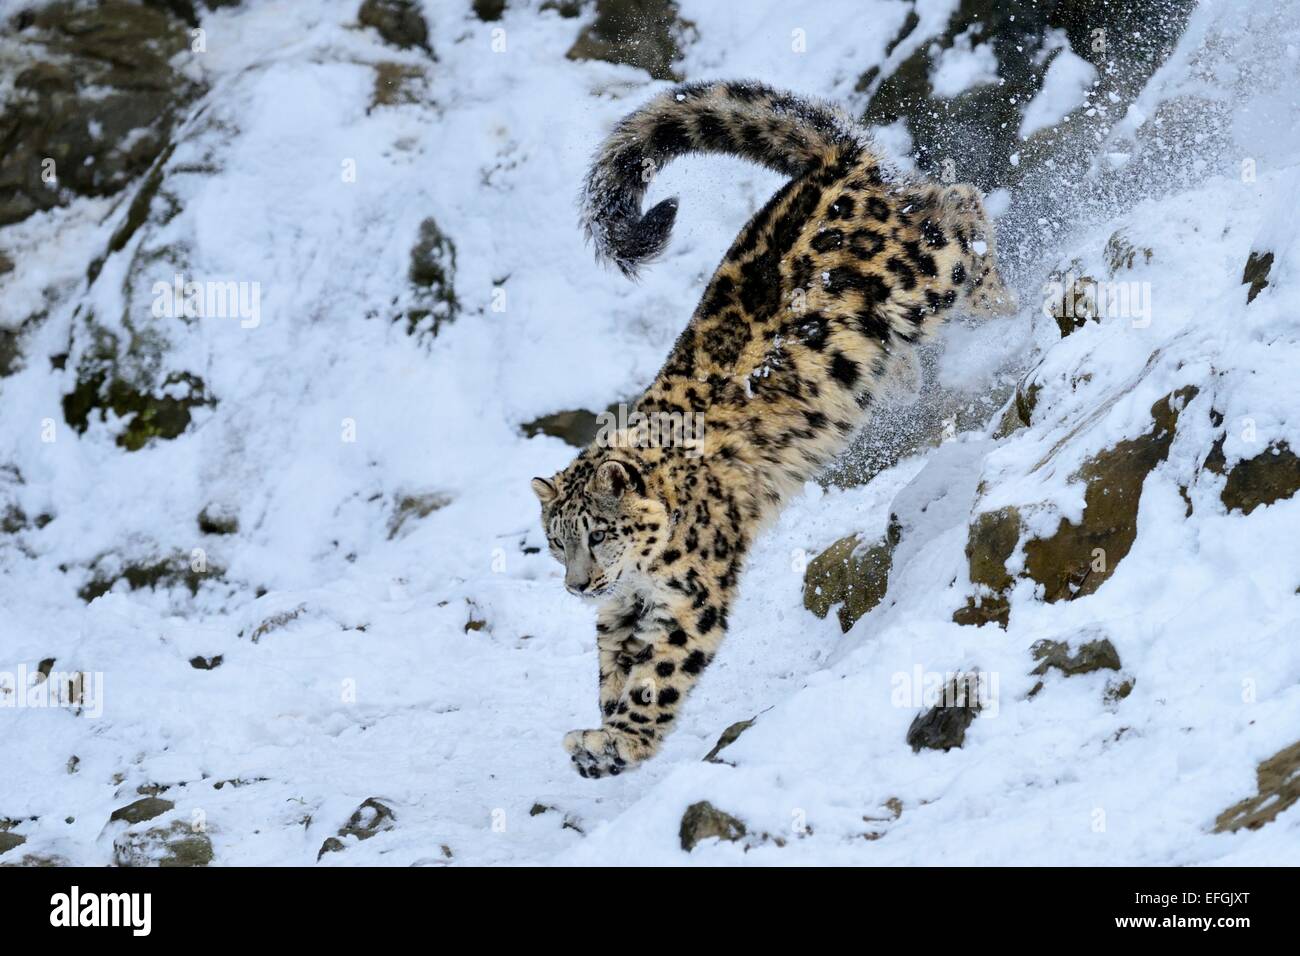 Schneeleopard (Panthera Uncia), juvenile, springen aus schneebedeckten  Felsen, Gefangenschaft, Schweiz Stockfotografie - Alamy